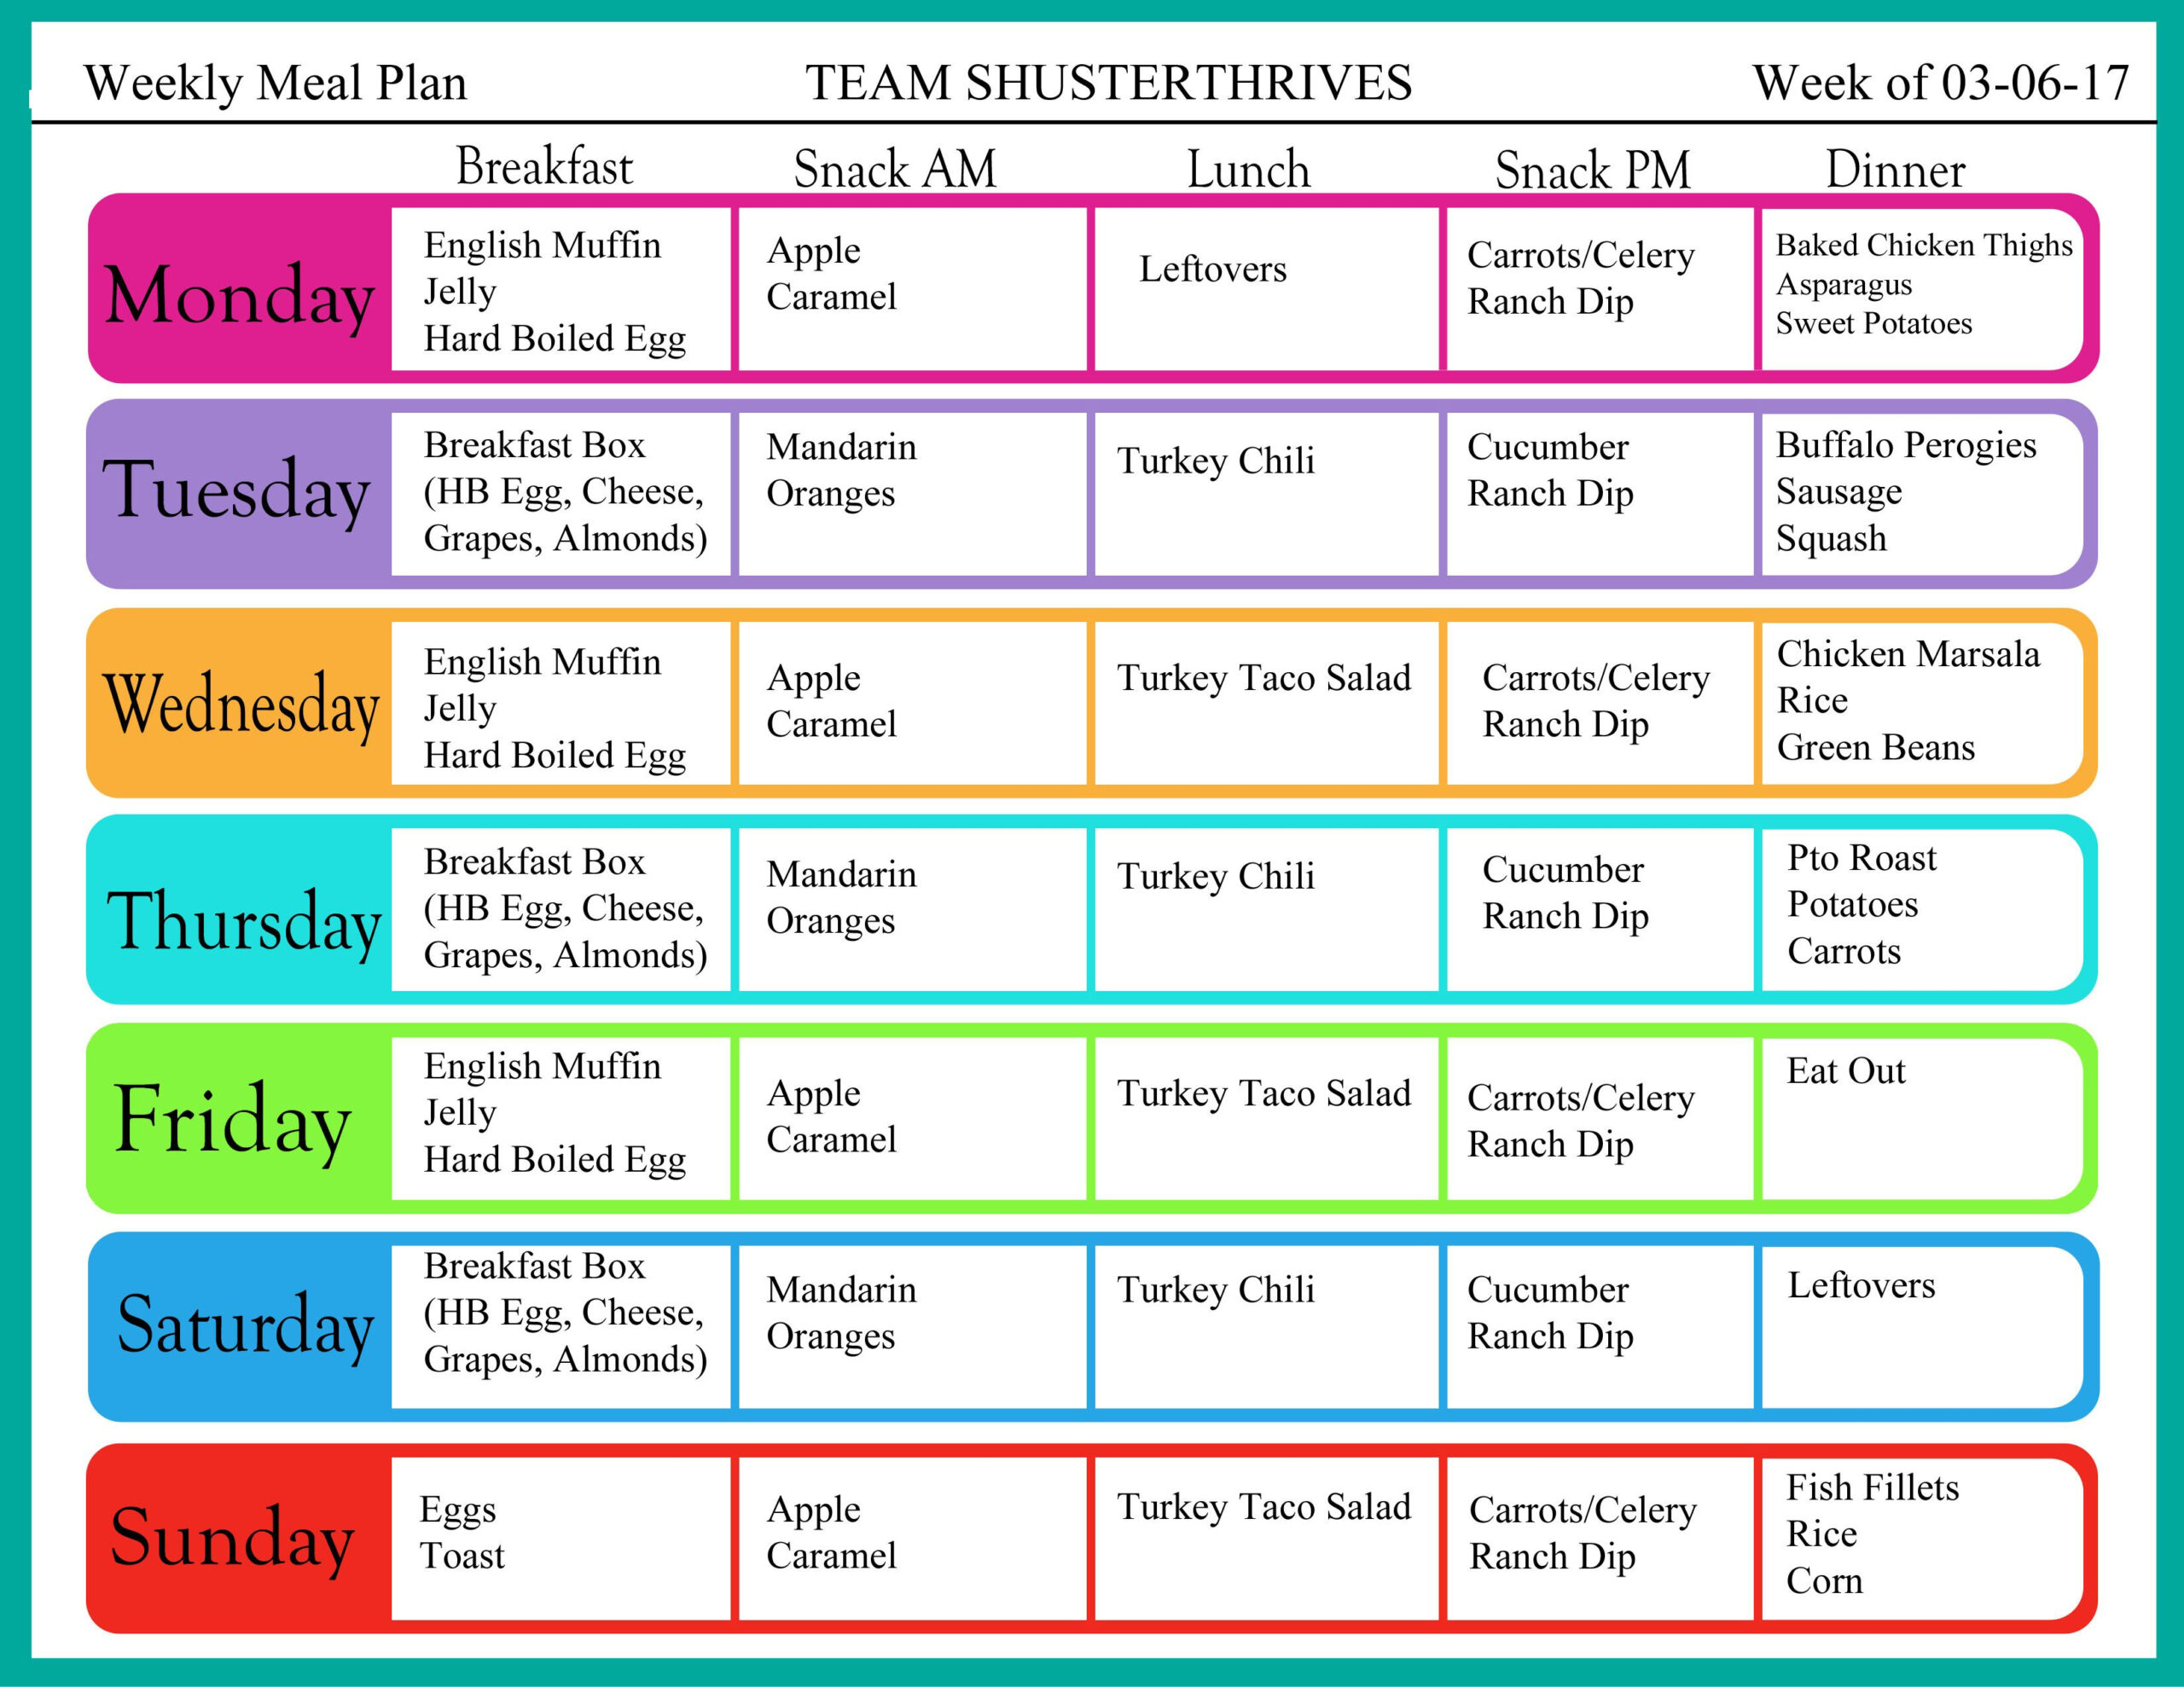 Weekly Menu Plan 03 06 17 Team Shuster Thrives Weekly 